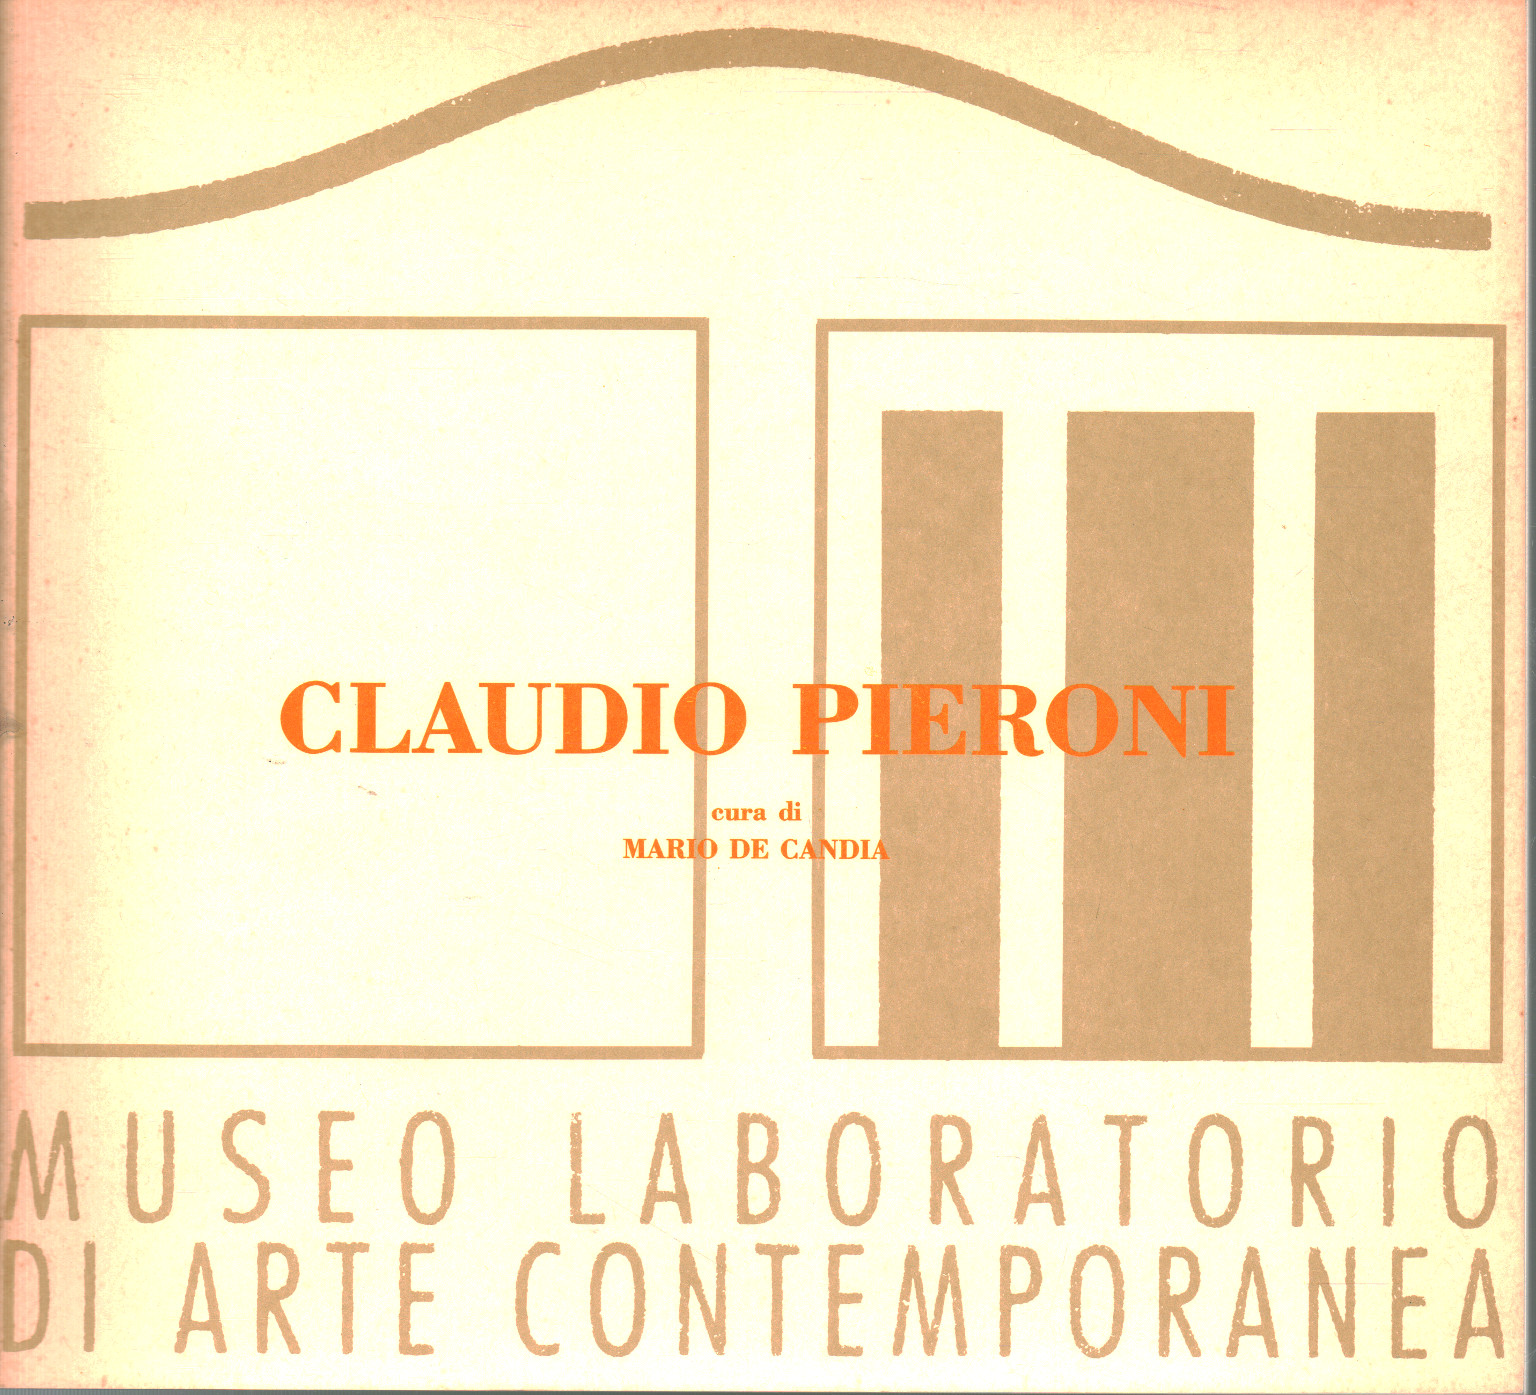 Clauio Pieroni, Mario de Candia